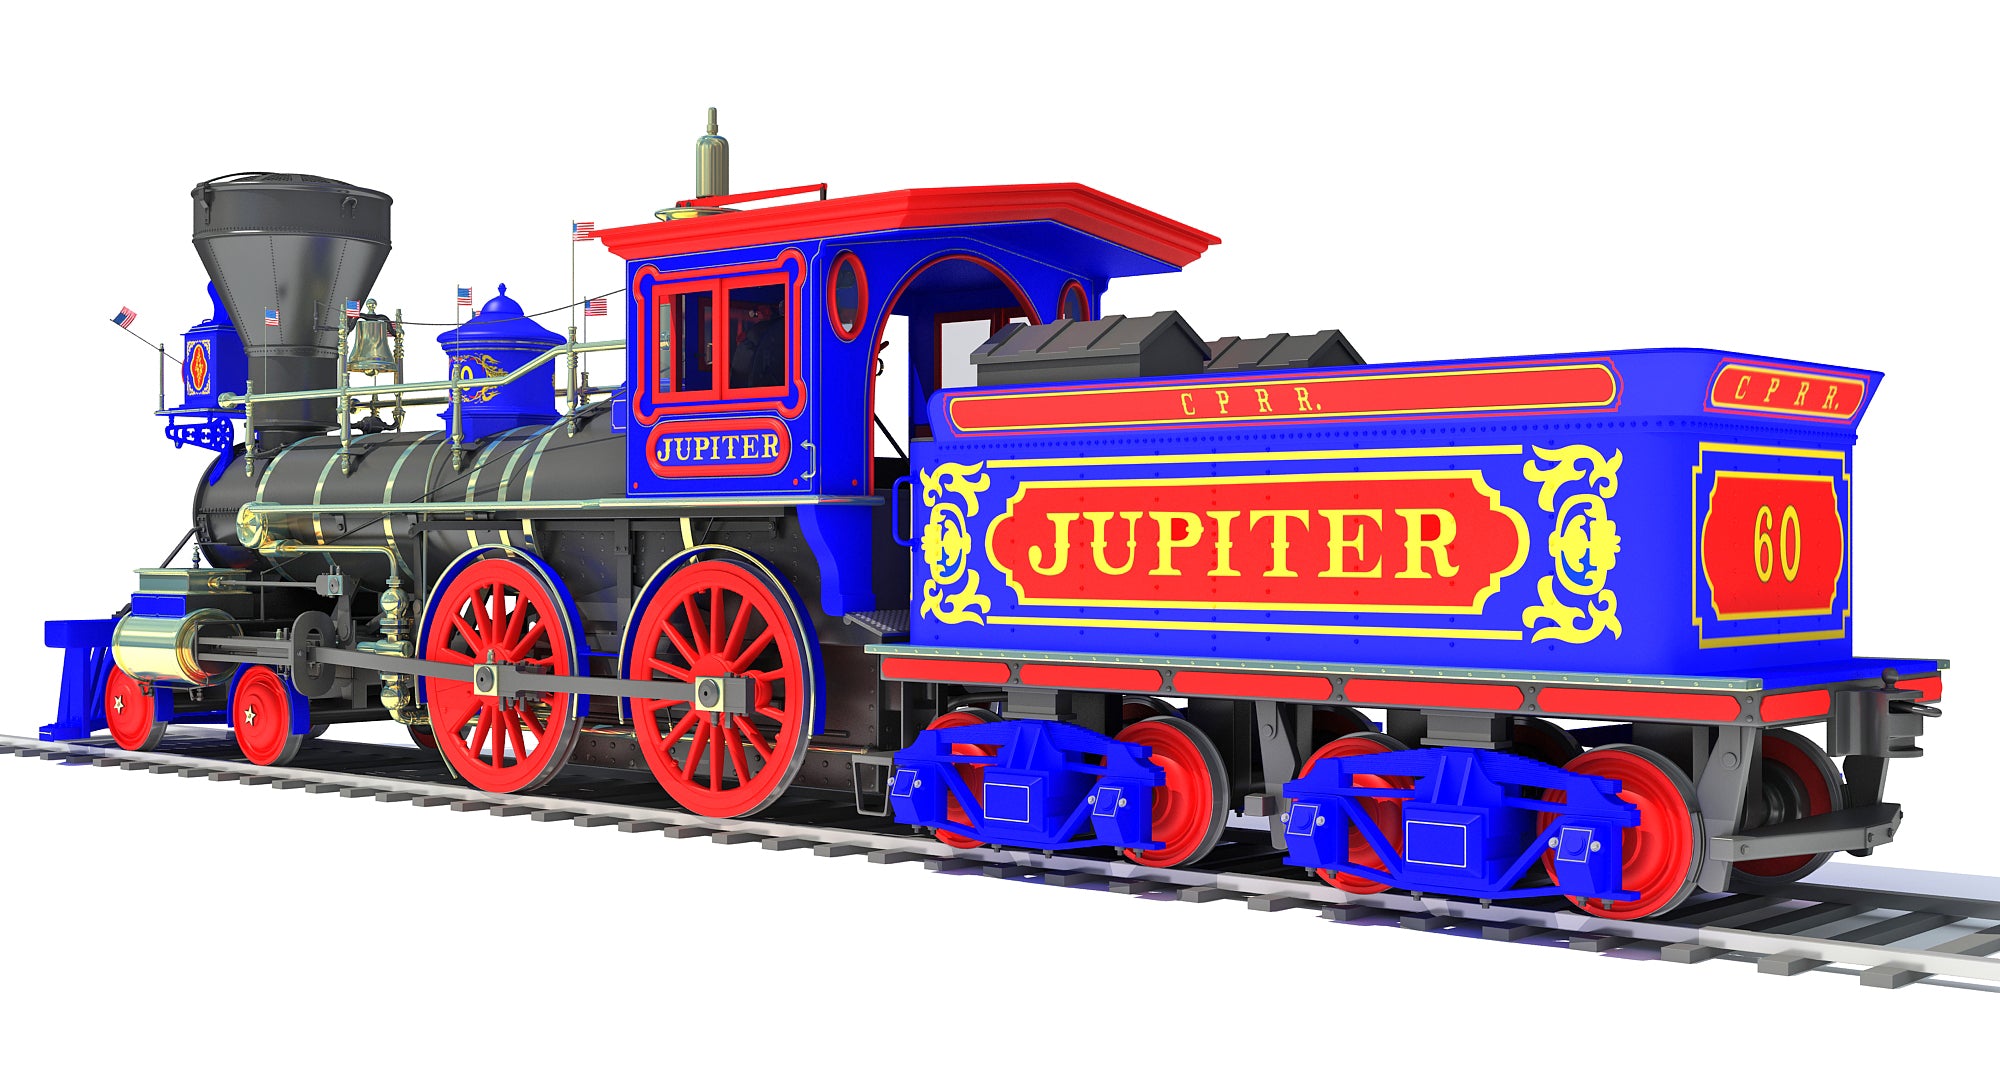 Jupiter Steam Locomotive